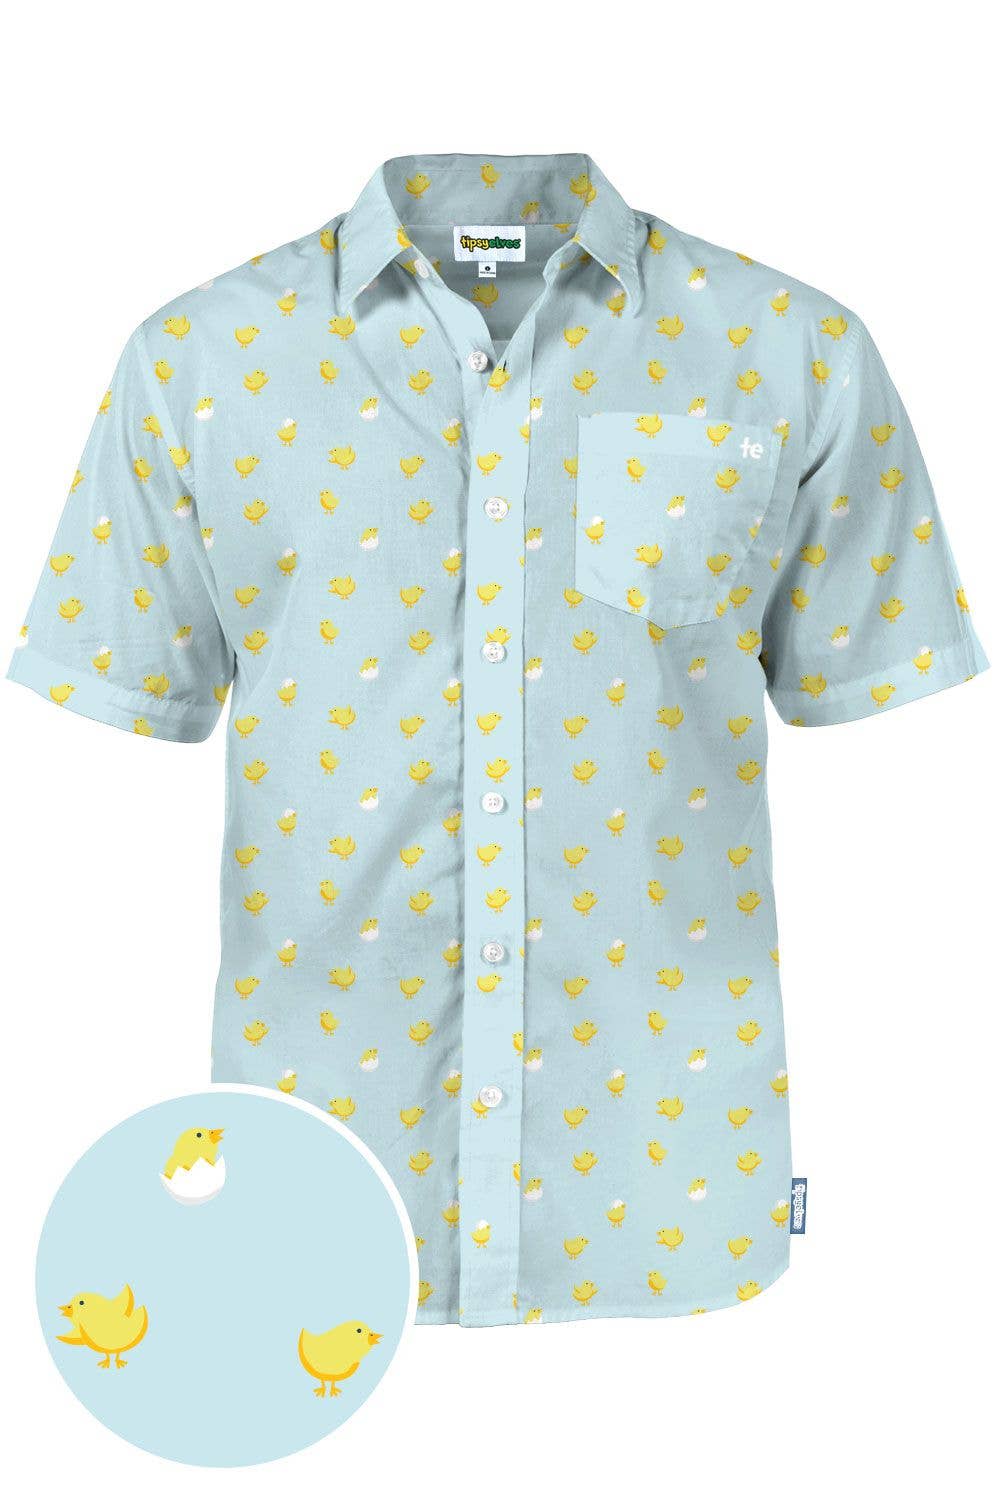 Men’s Chick Magnet Hawaiian Shirt